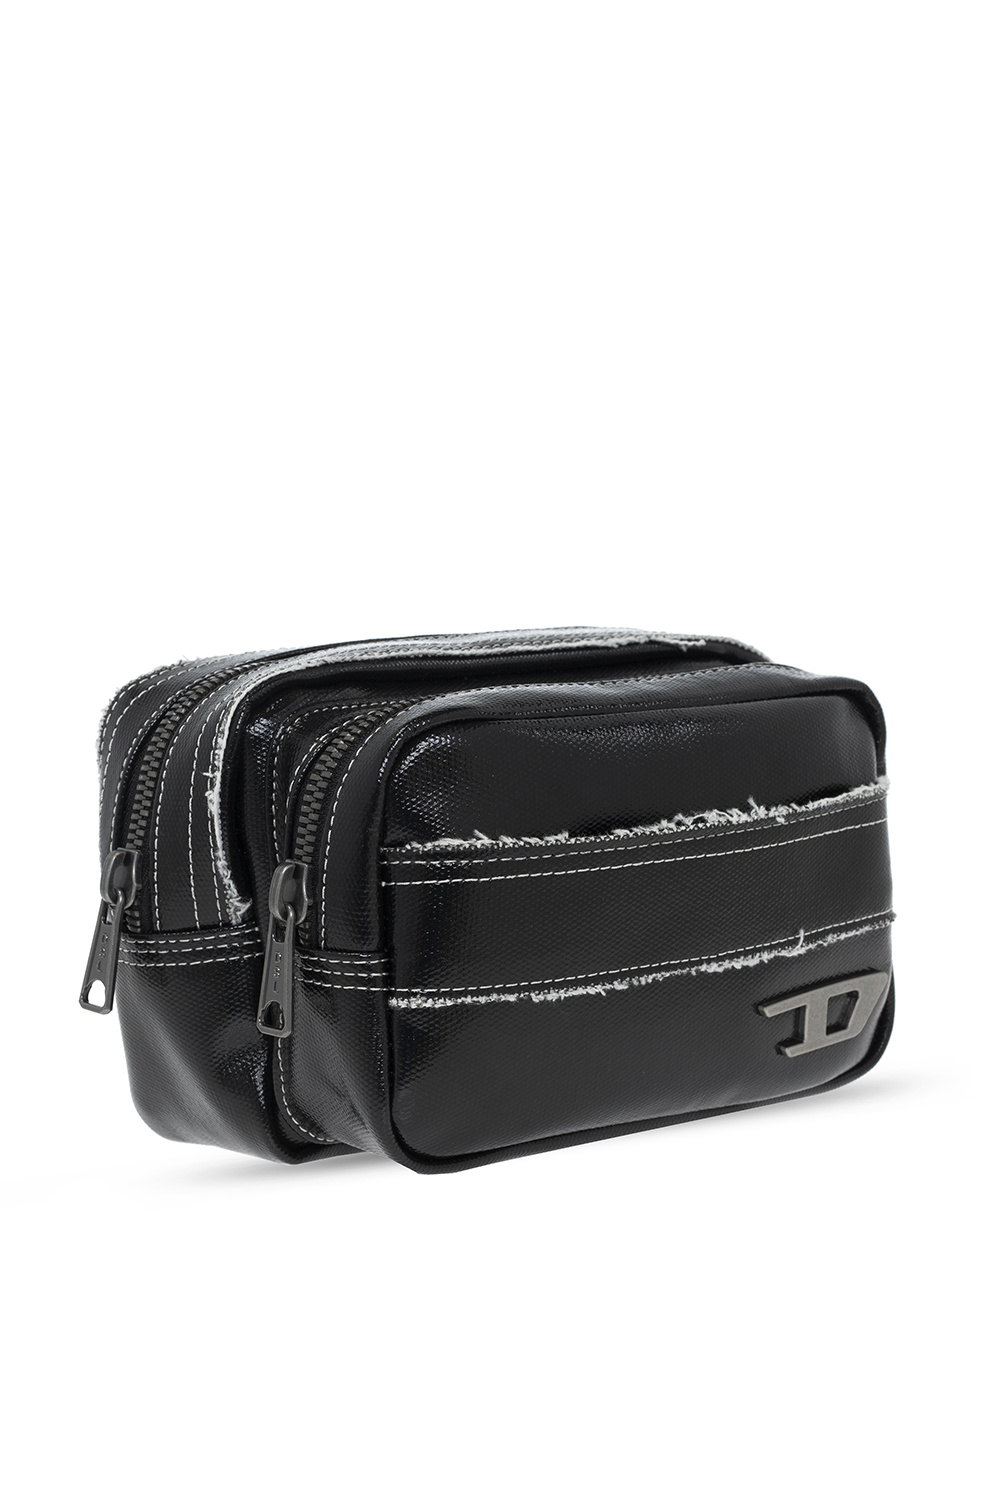 Diesel ‘Korro’ belt bag